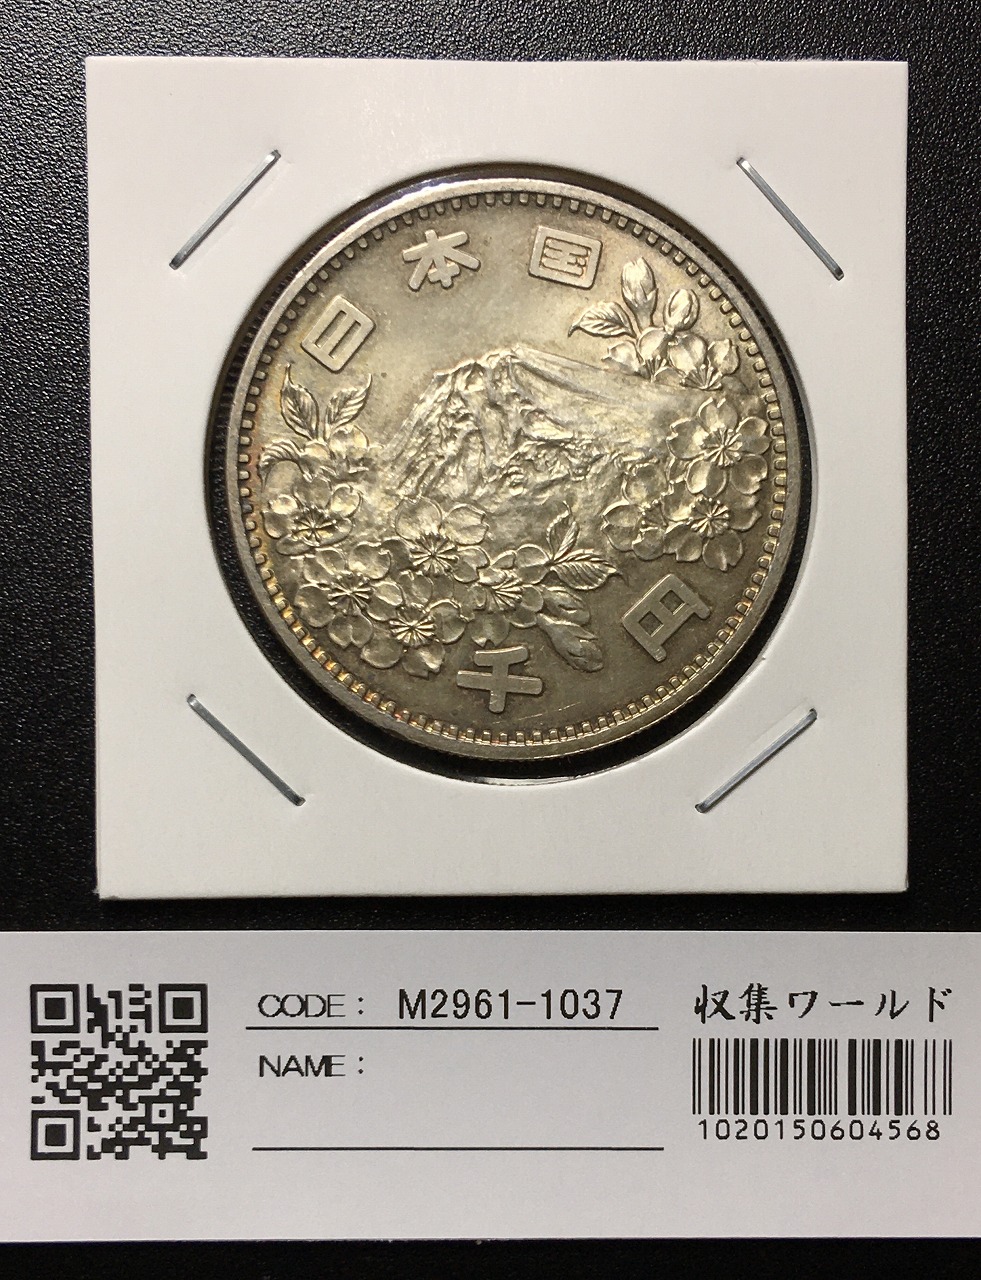 東京オリンピック記念 1964年(S39) 1000円銀貨 未使用-1037